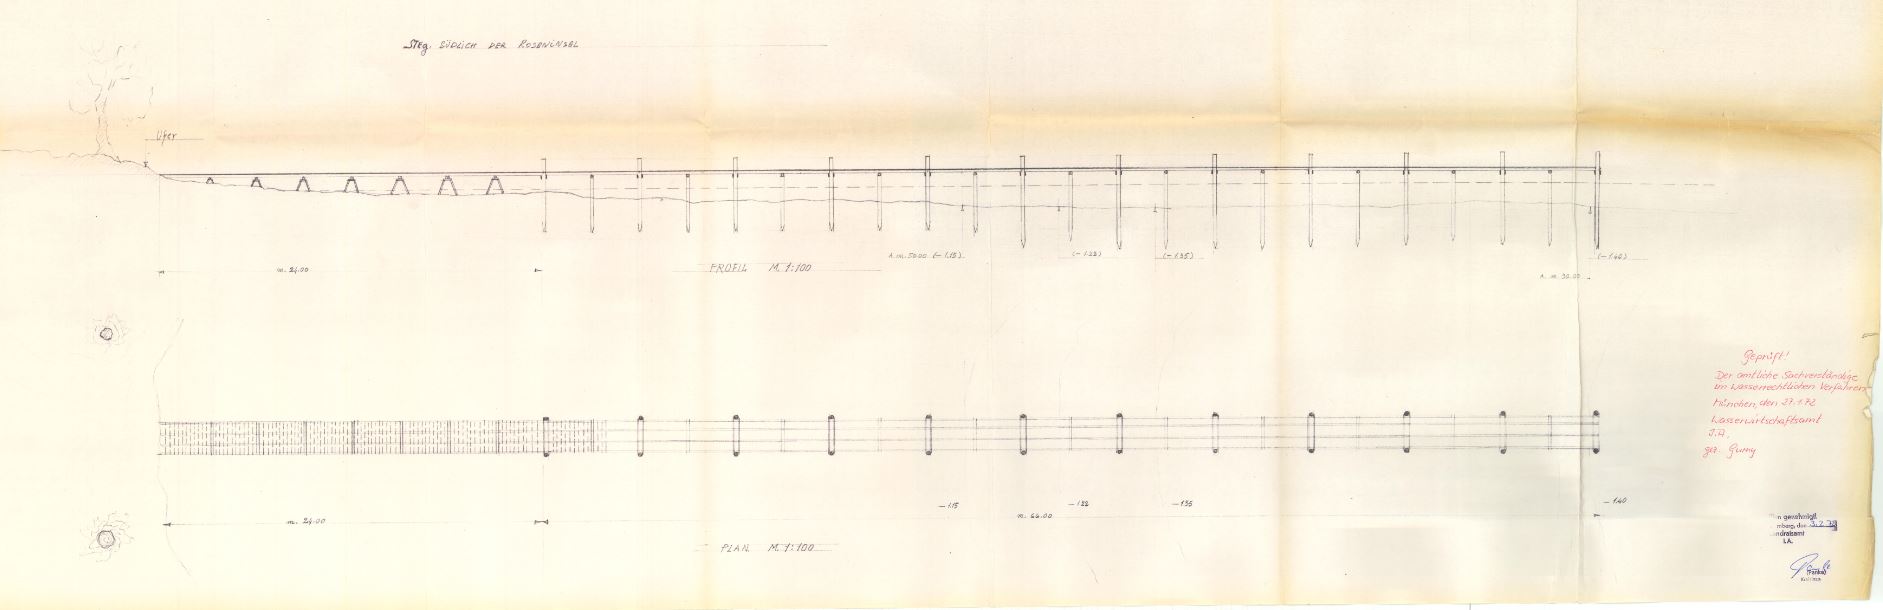 Genehmigungsplan des temporären Pfahlbaustegs auf der Südseite der Roseninsel, 3. Februar 1972